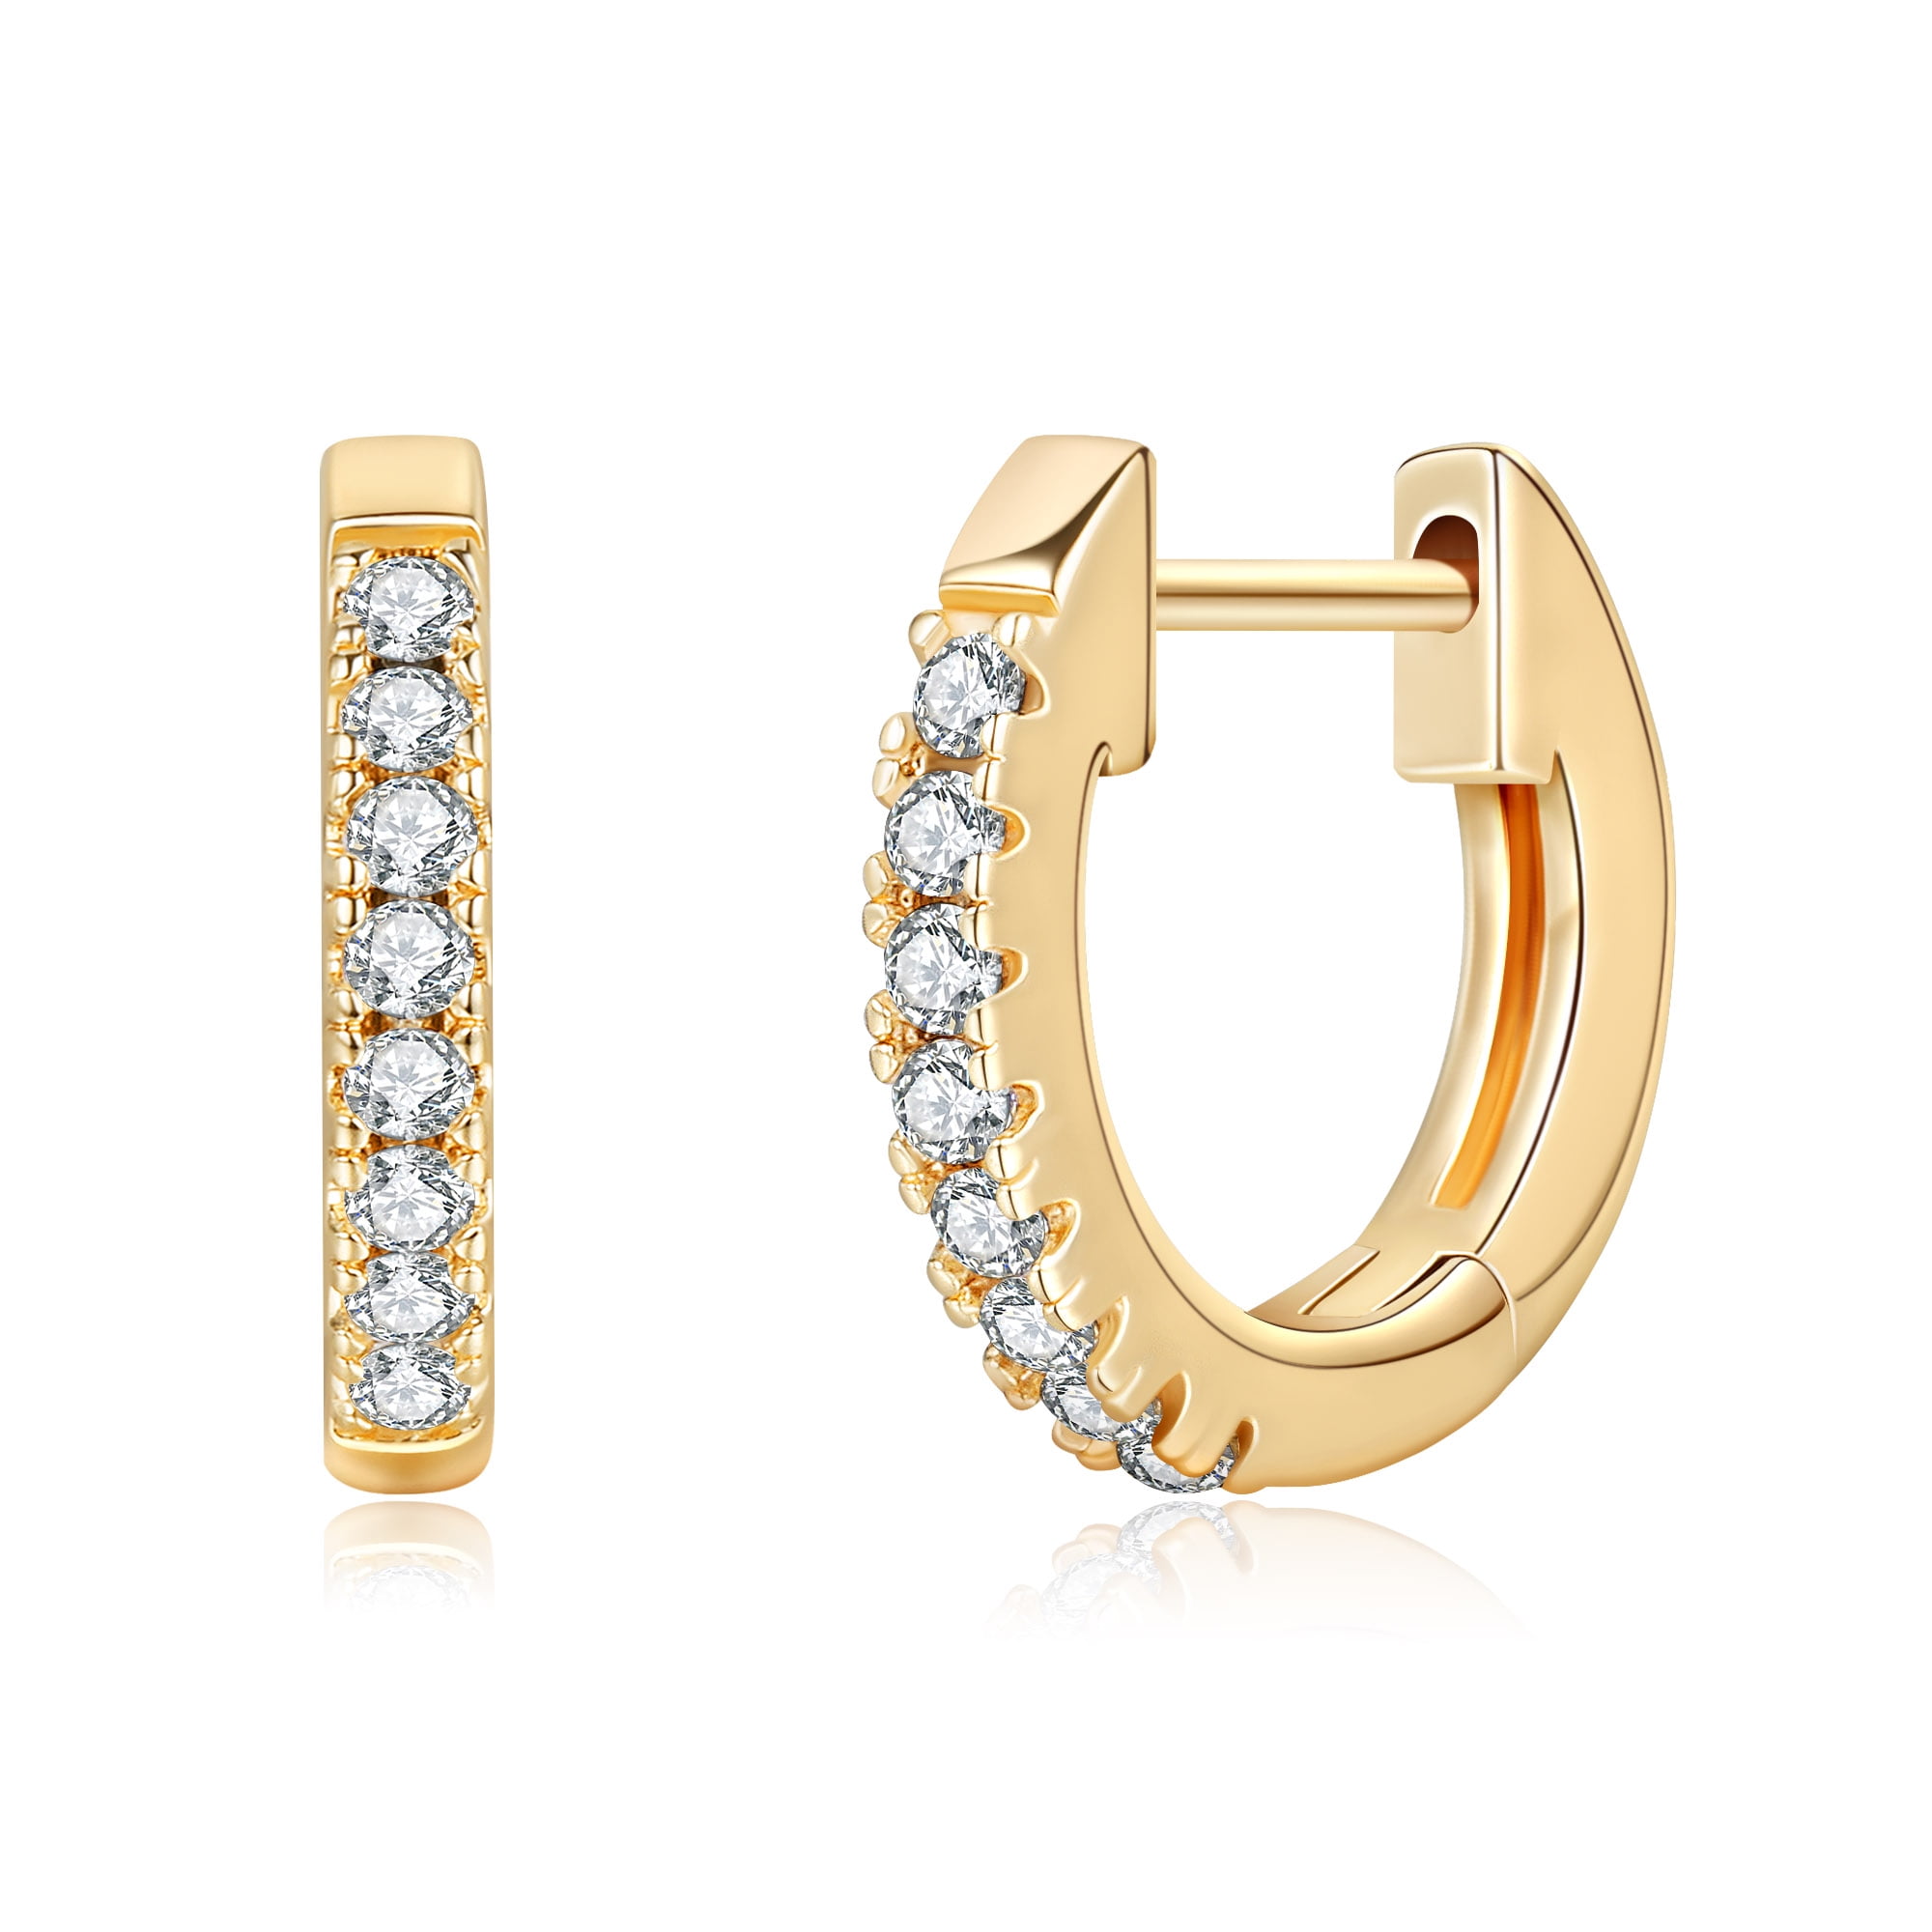 Diamond Earrings,925 Sterling Silver Bridal Earrings,Clip On Style Designer Diamond Earrings,14K Yellow Gold Plated,Womens Earrings